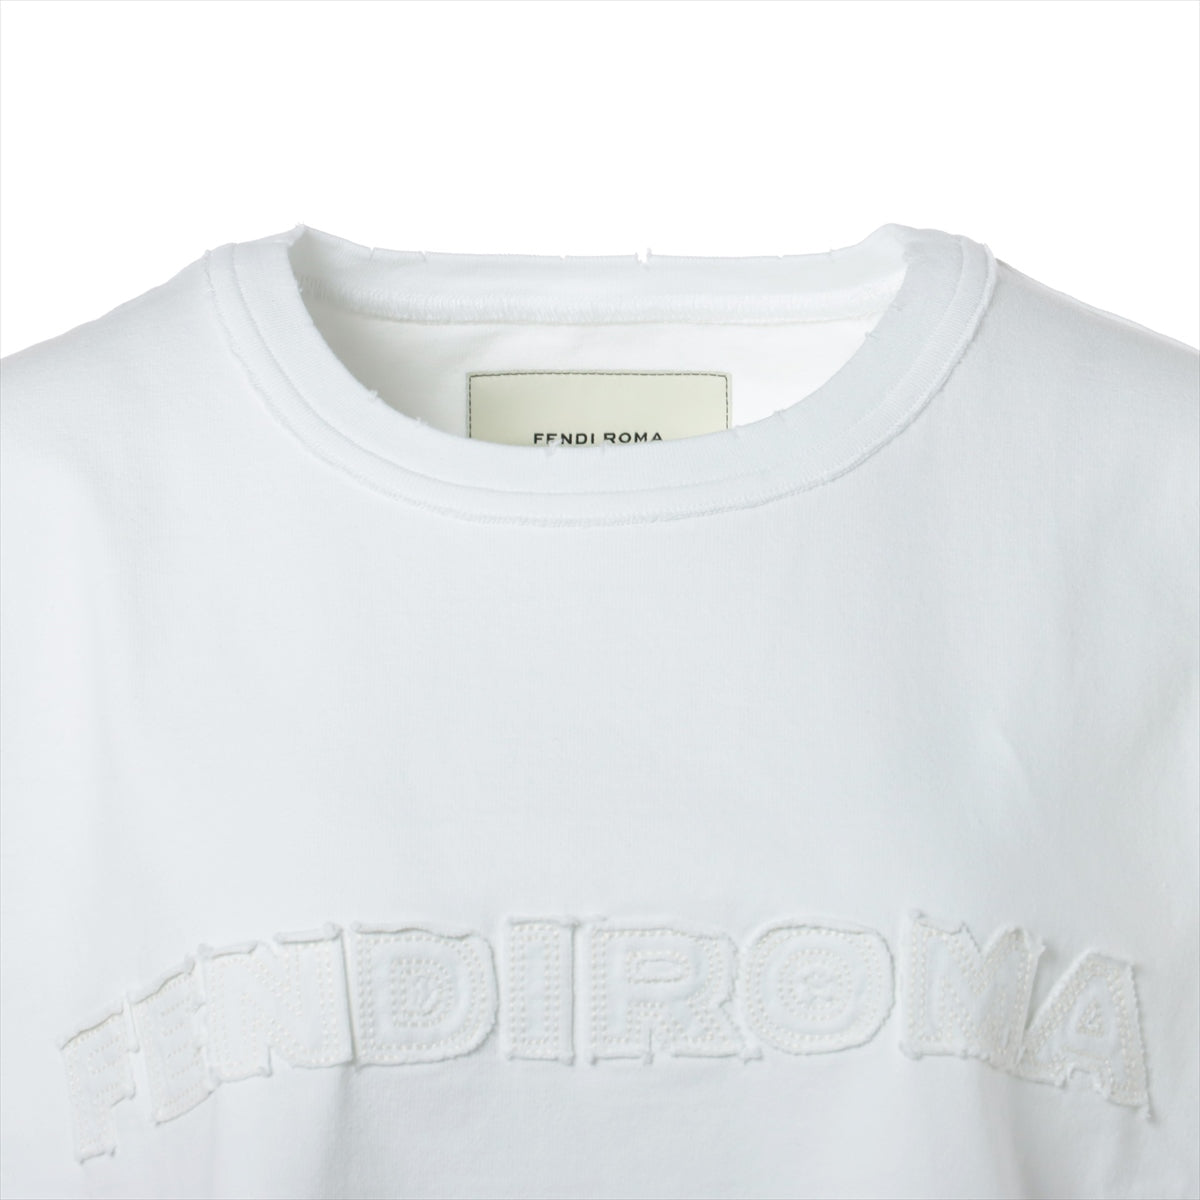 フェンディ×マークジェイコブス コットン Tシャツ S レディース ホワイト  FENDI by MARC JACOBS オーバーサイズ FS7965